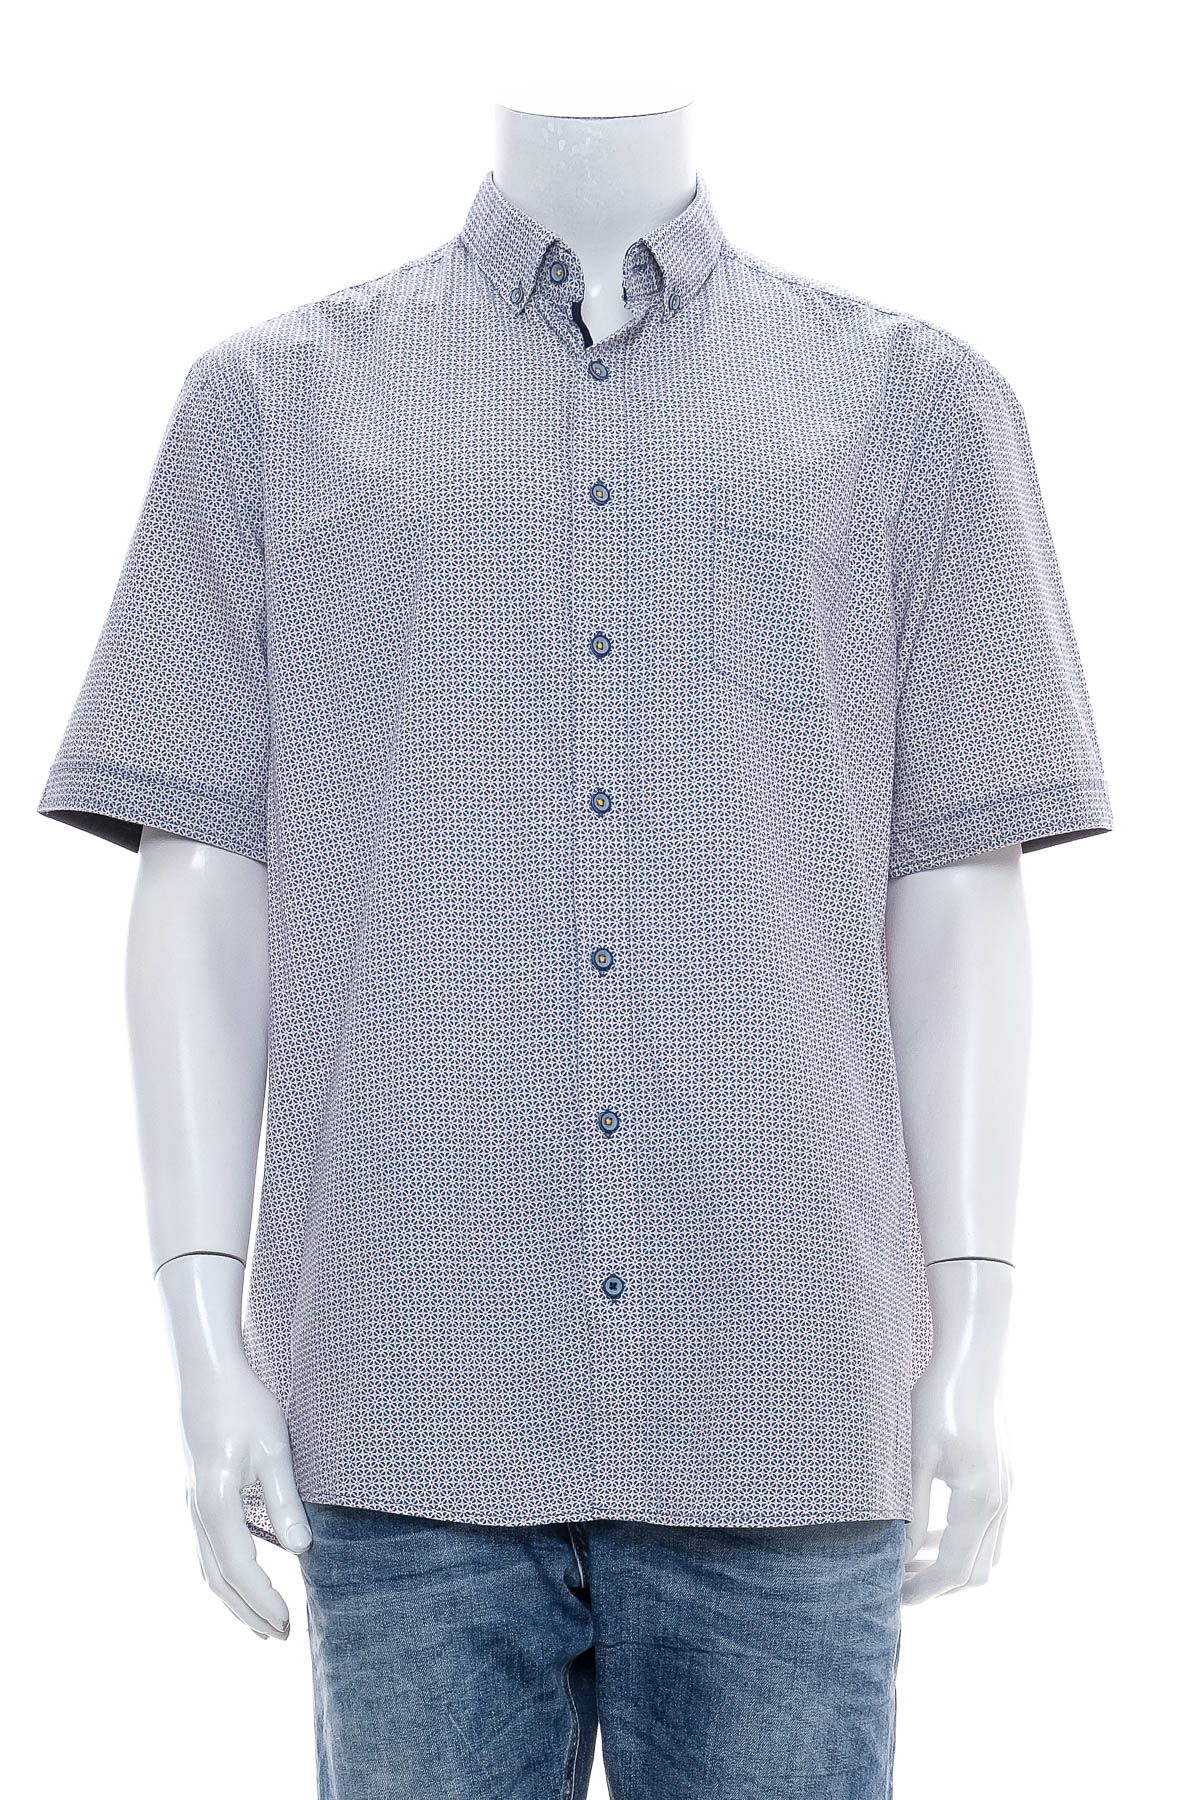 Ανδρικό πουκάμισο - Redmond - 0